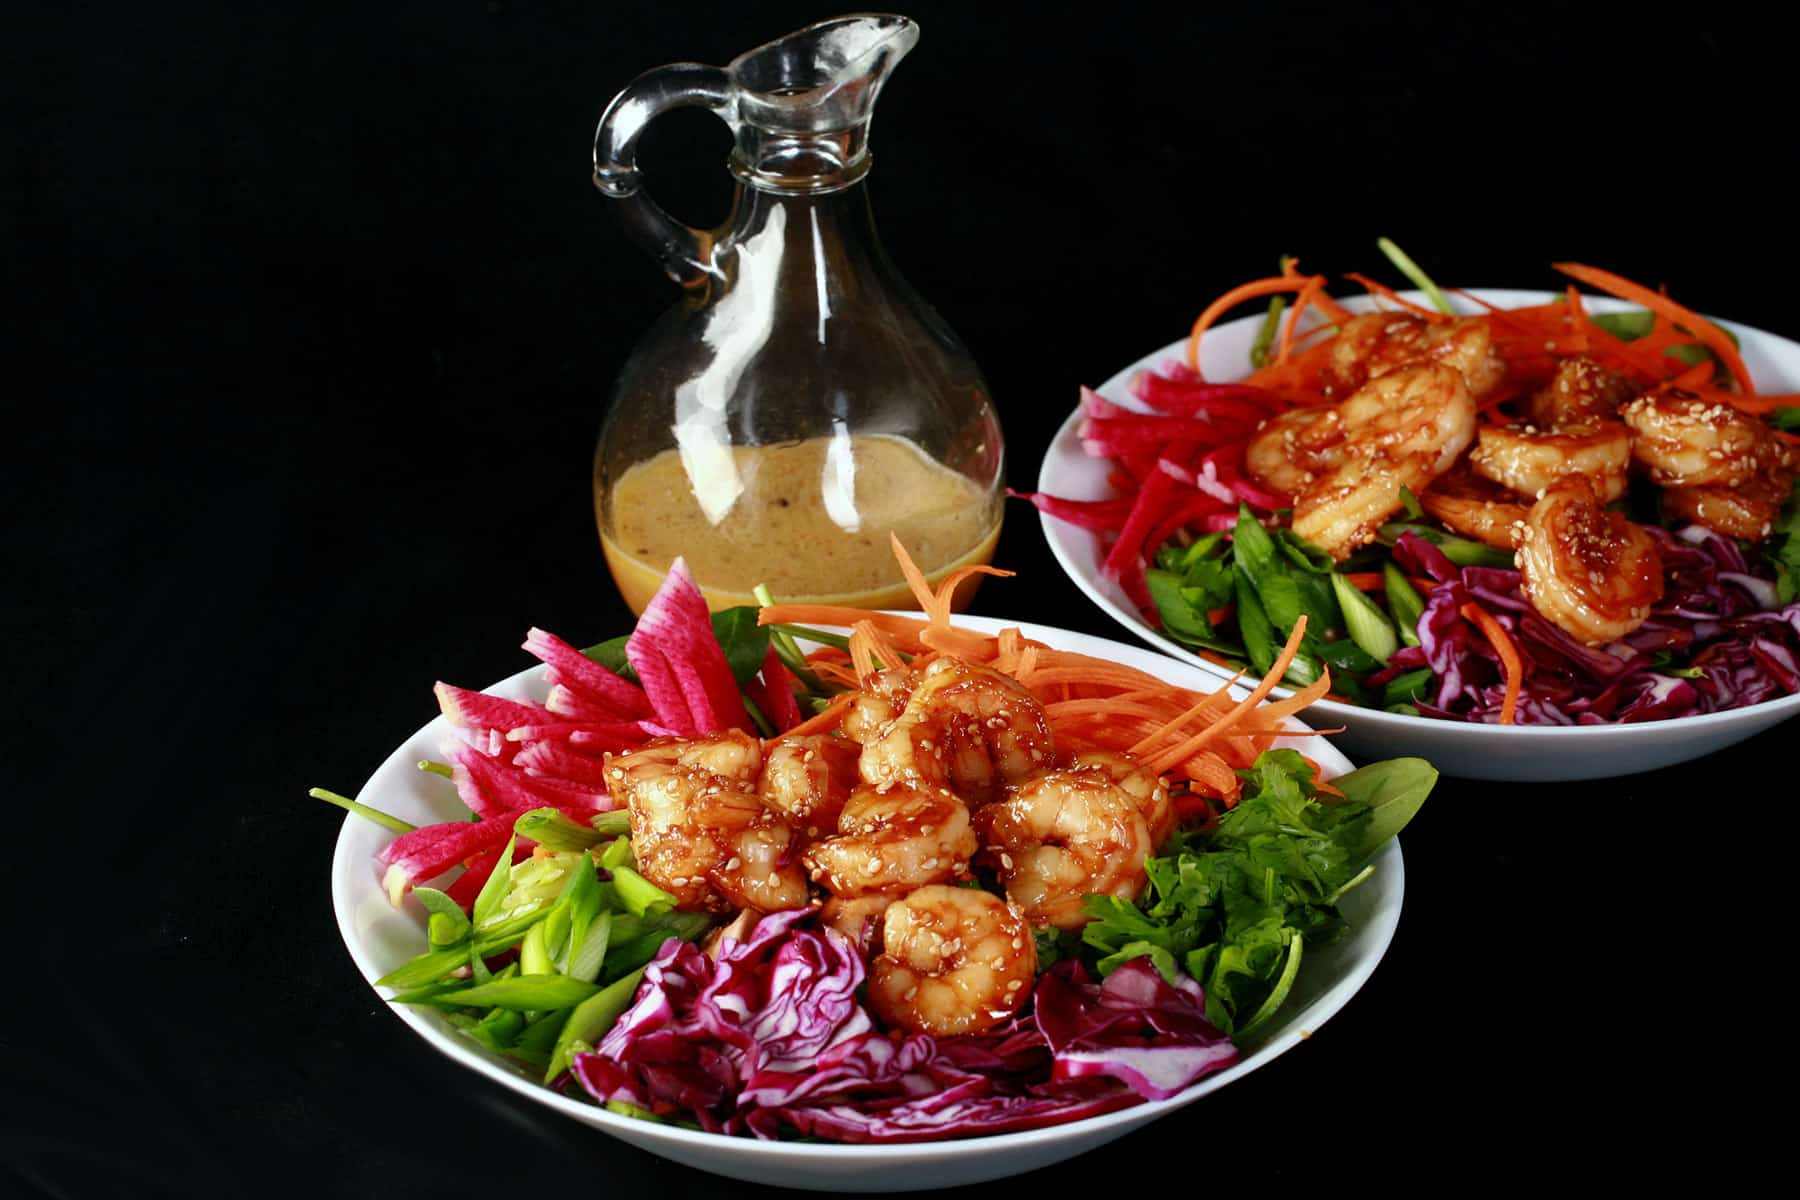 2 Honey ginger shrimp salads with a bottle of honey ginger vinaigrette.